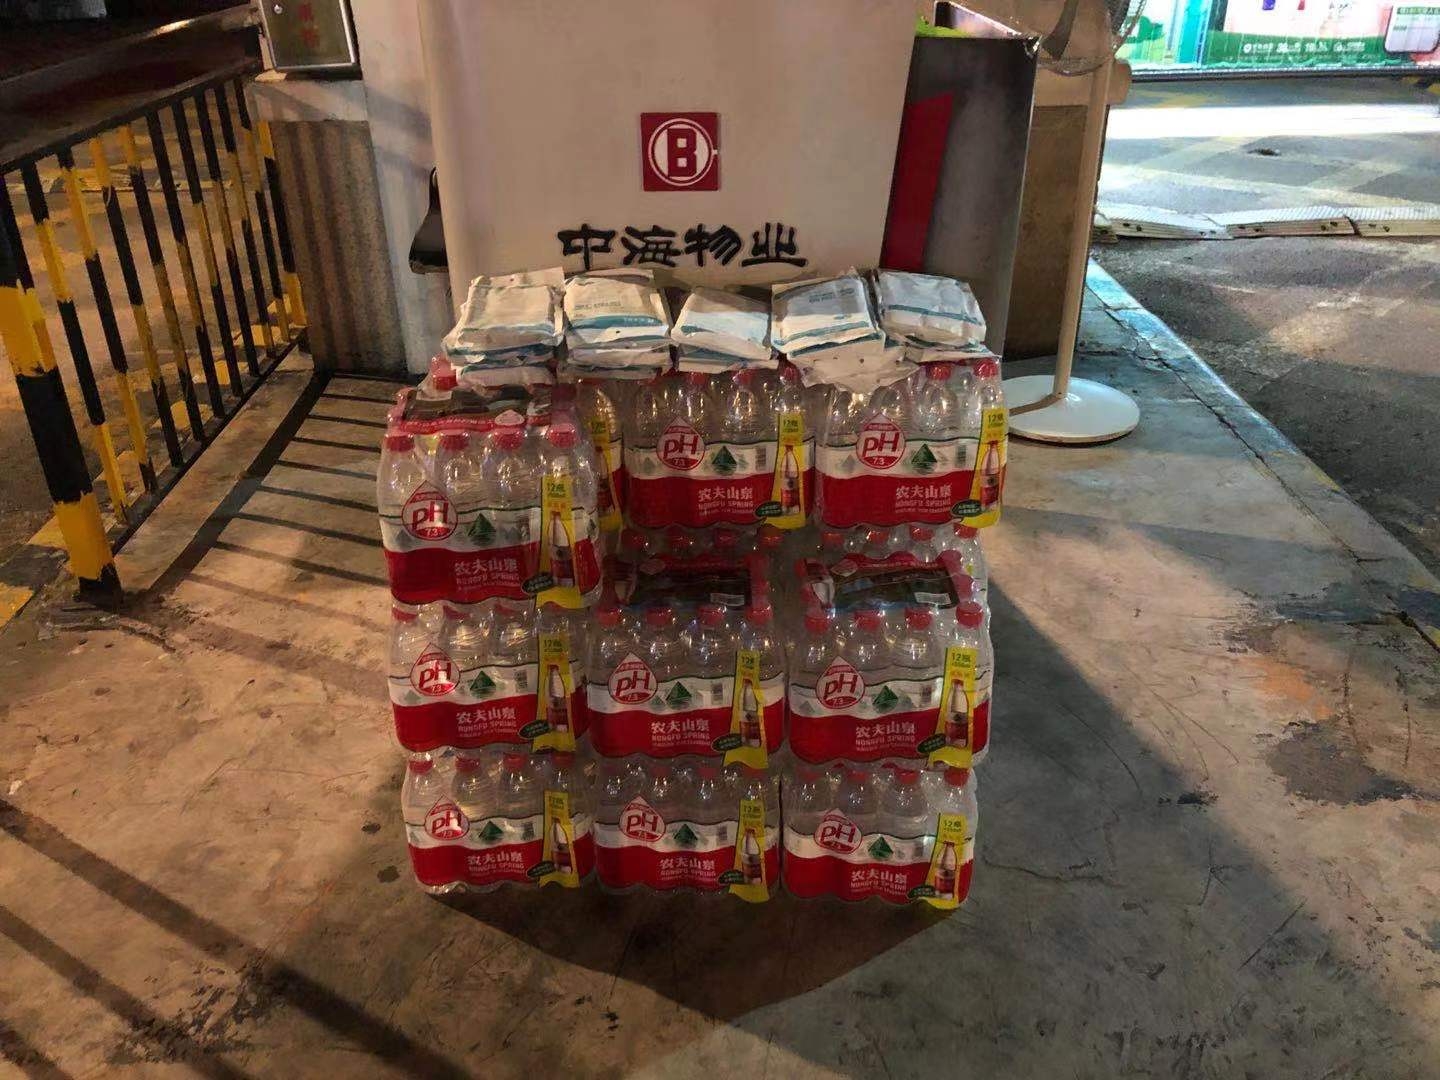 7月28日晚,中海名城项目门岗处堆放着十几袋口罩和十几箱矿泉水